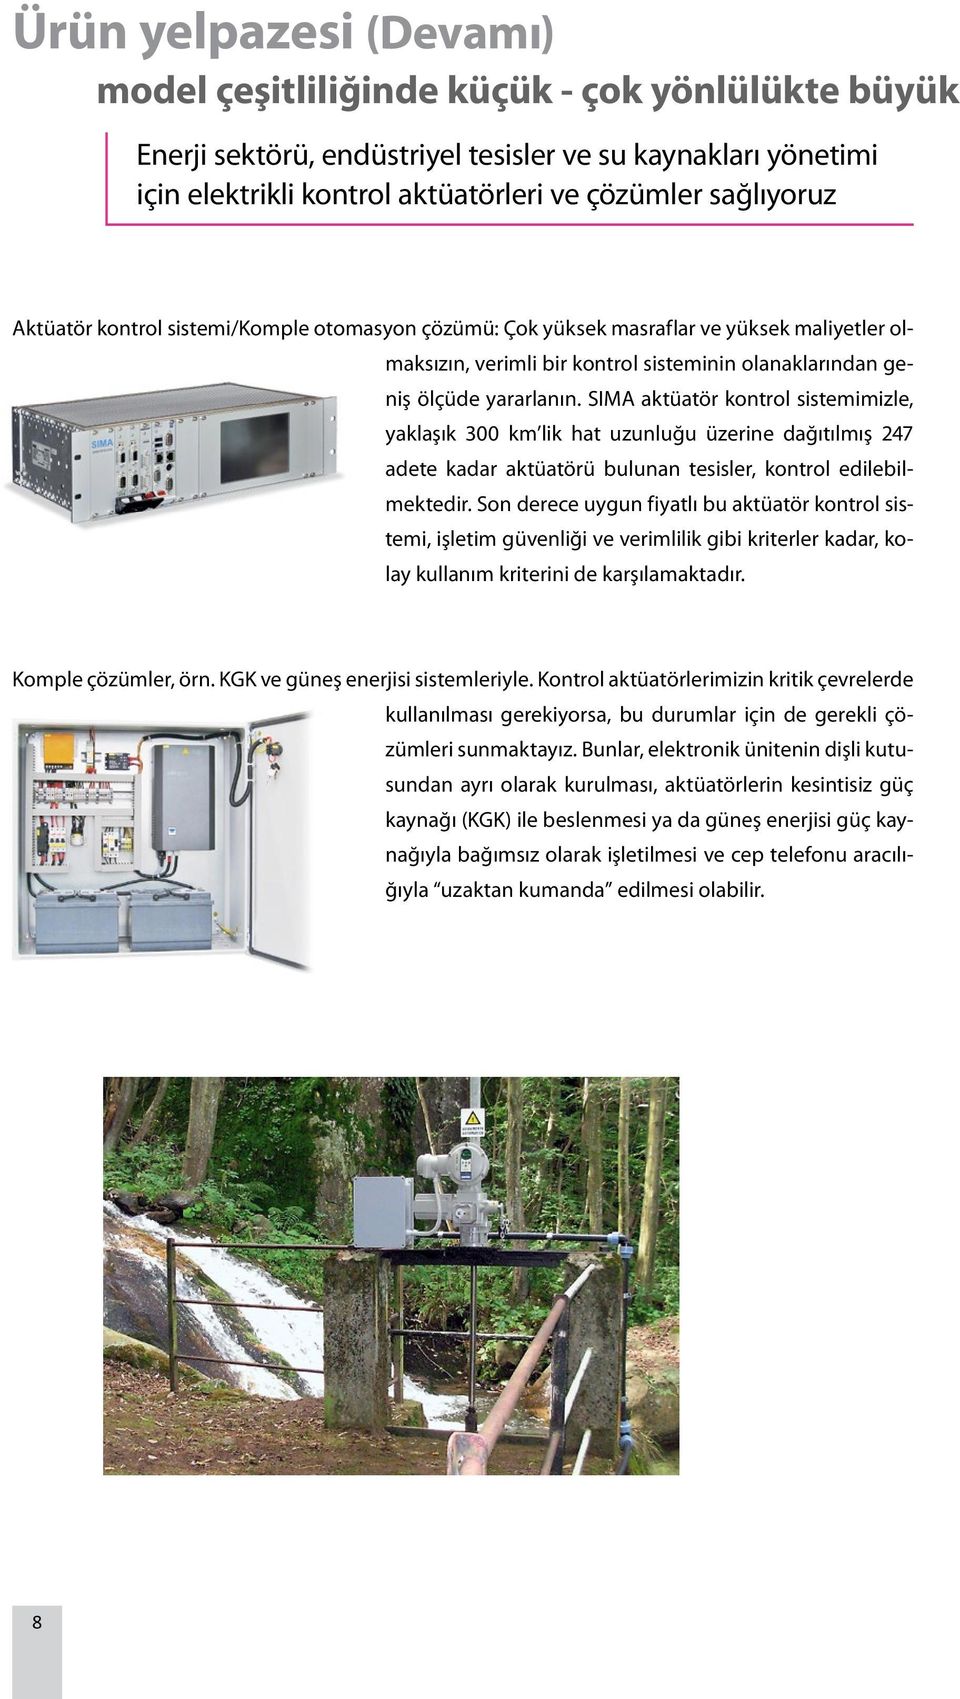 SIMA aktüatör kontrol sistemimizle, yaklaşık 300 km lik hat uzunluğu üzerine dağıtılmış 247 adete kadar aktüatörü bulunan tesisler, kontrol edilebilmektedir.